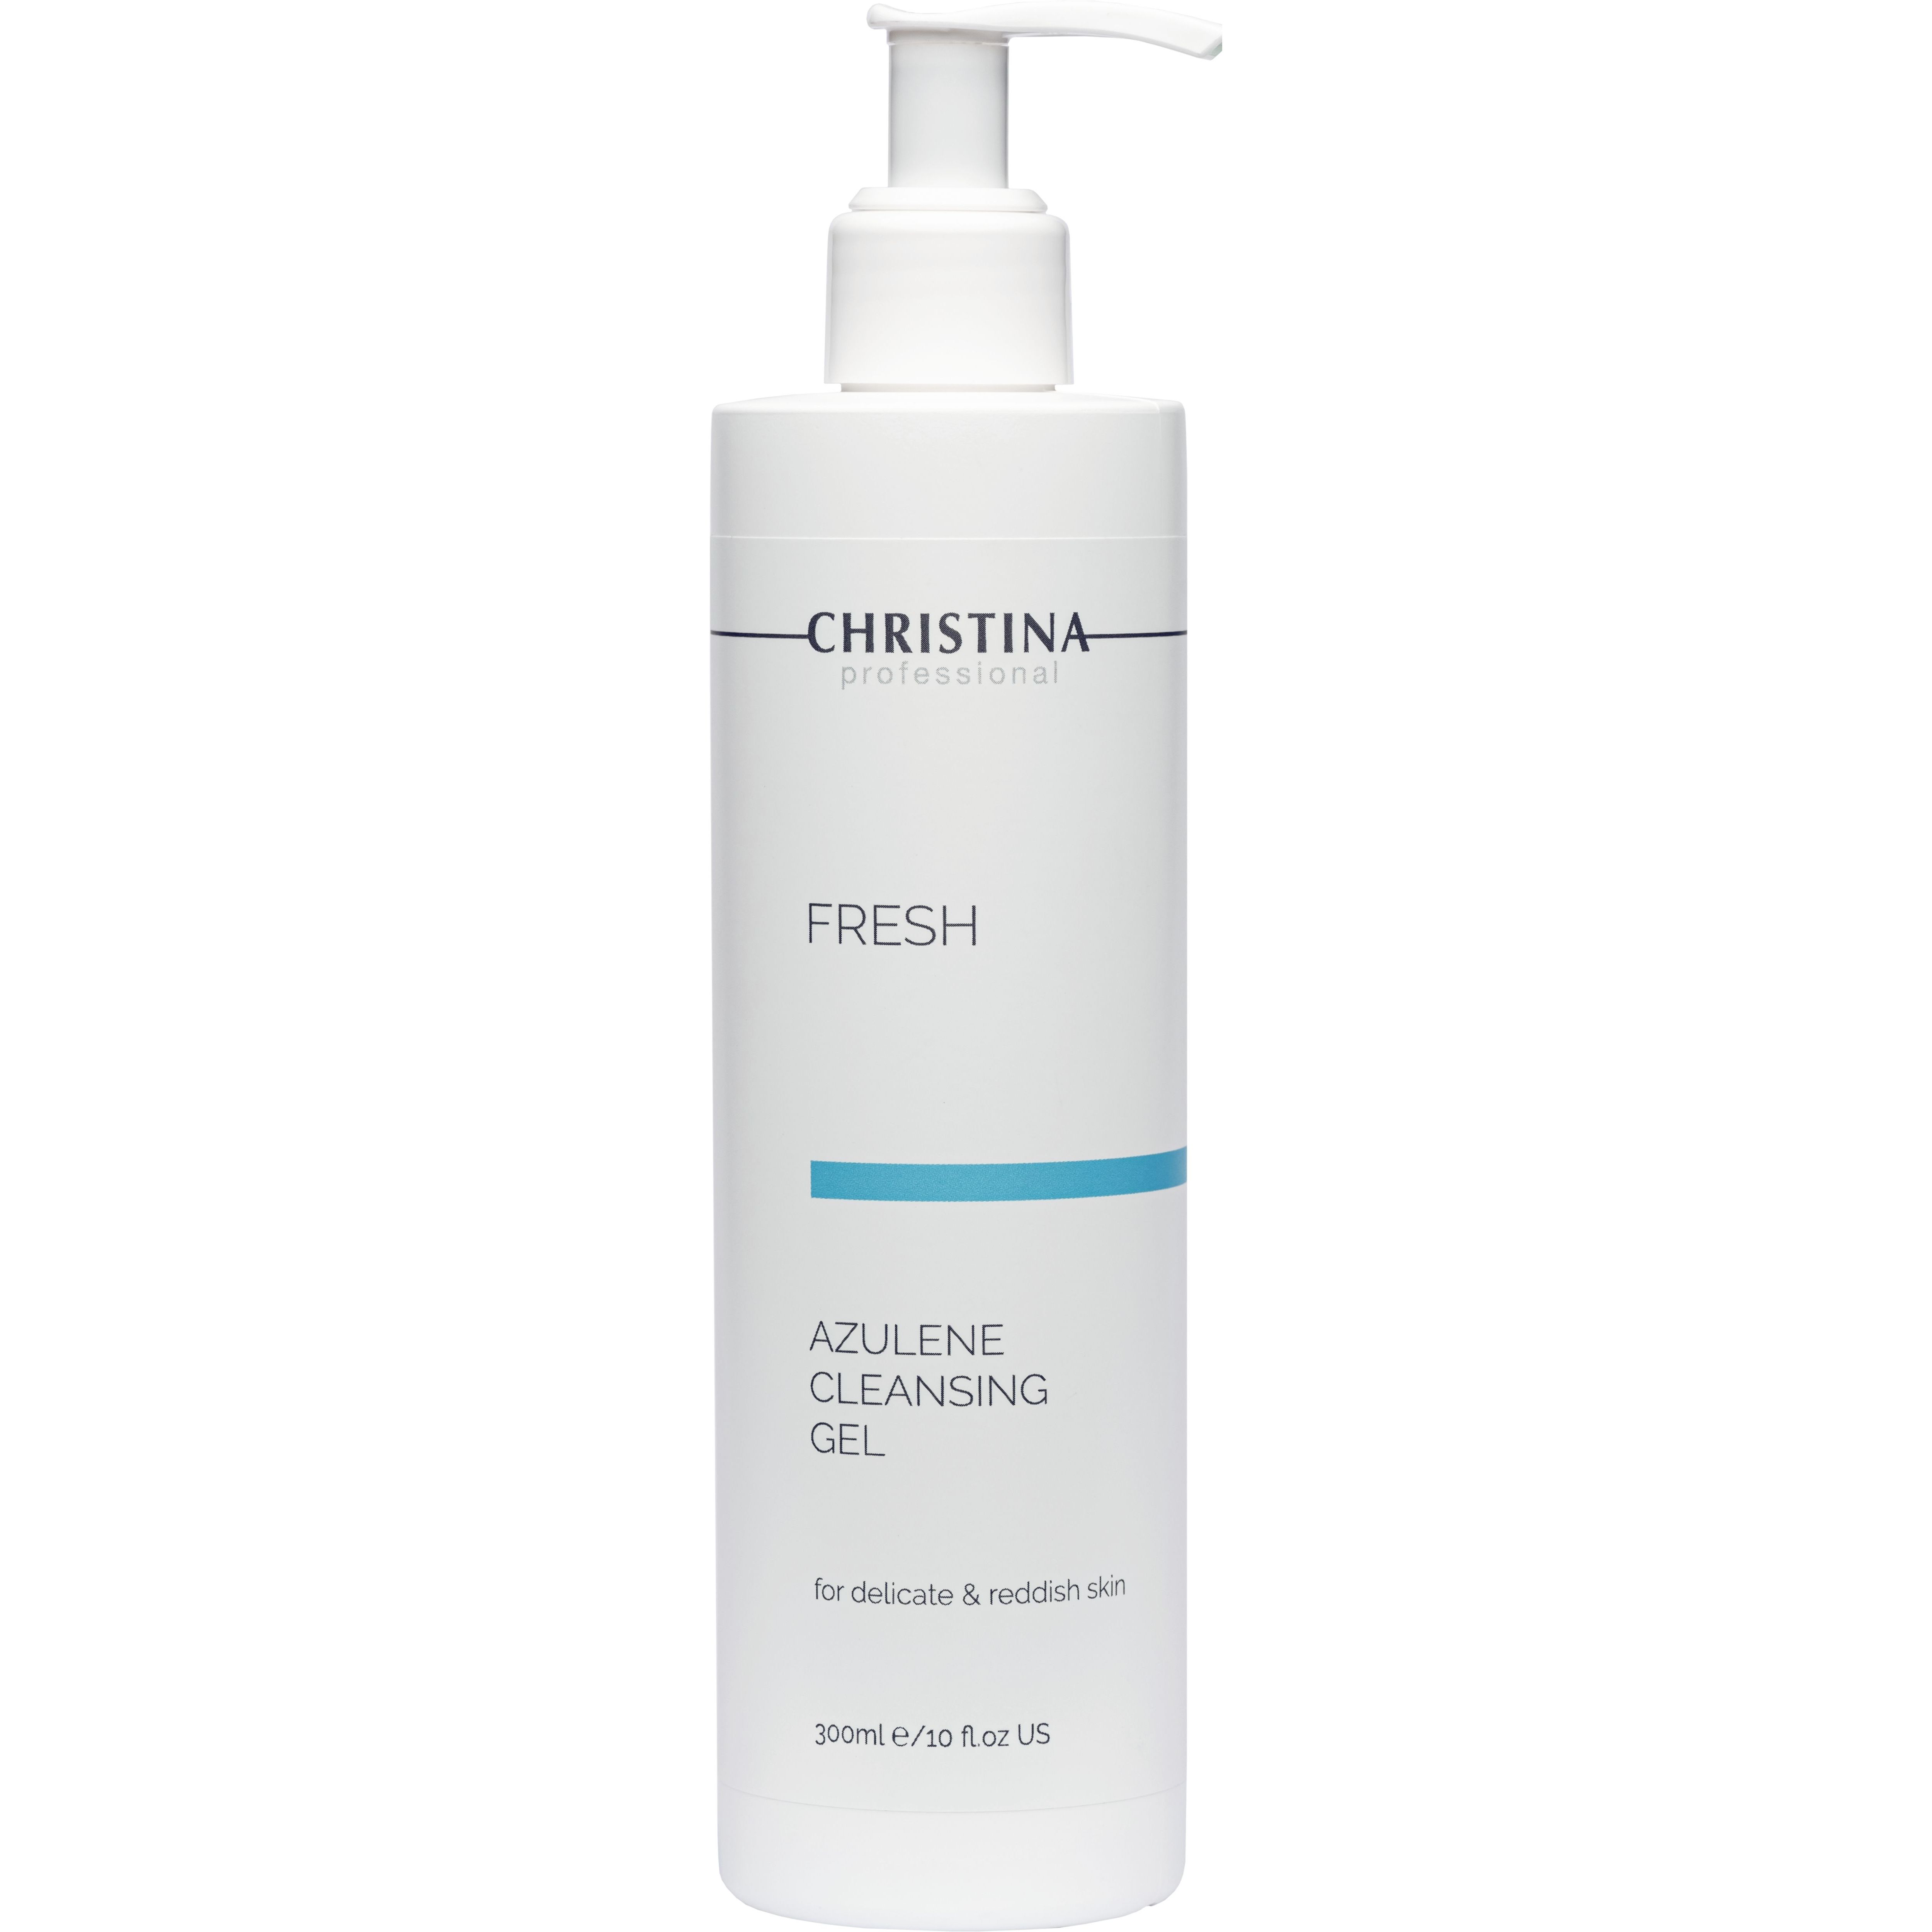 Азуленовий очищувальний гель для чутливої шкіри Christina Fresh Azulene Cleansing Gel For Delicate & Reddish Skin, 300 мл - фото 1